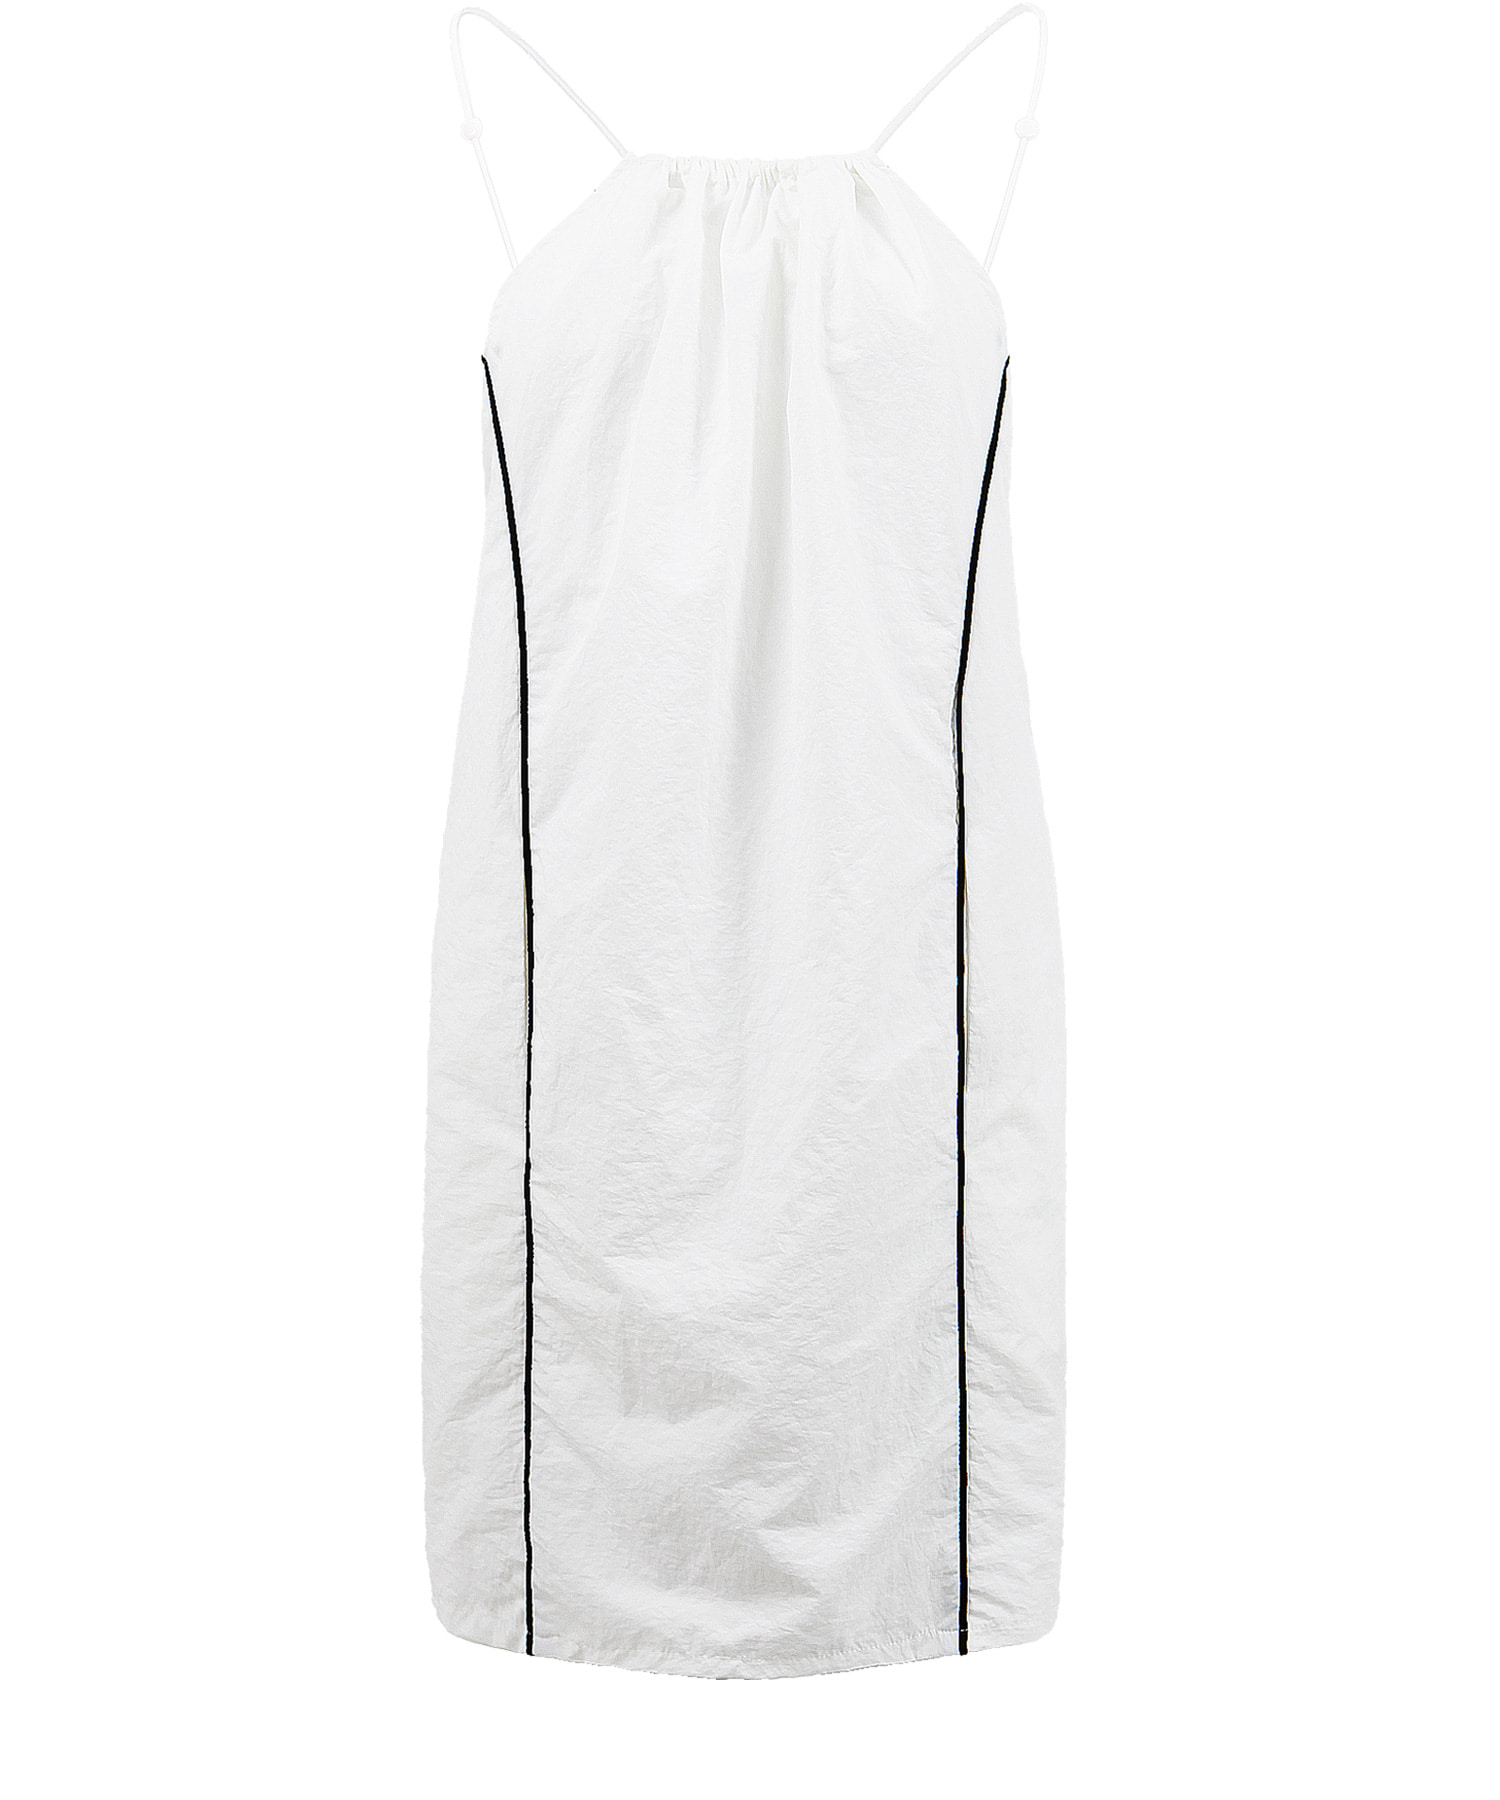 JOKE DRESS IN WHITE